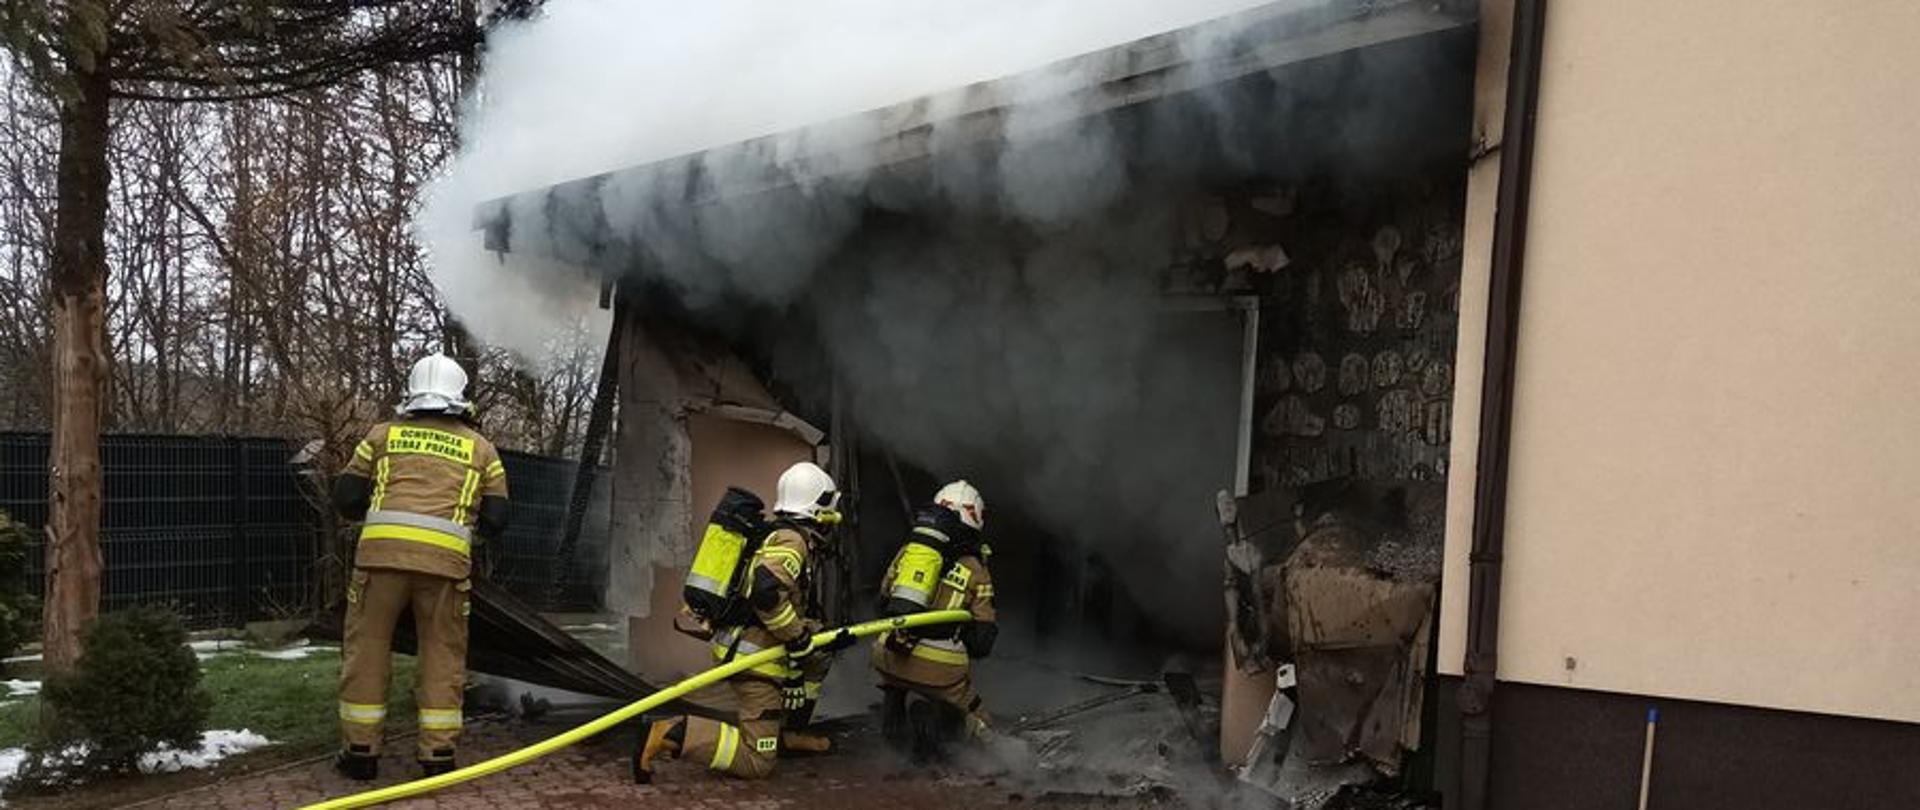 Strażacy podają wodę na garaż z którego wydobywa się dym